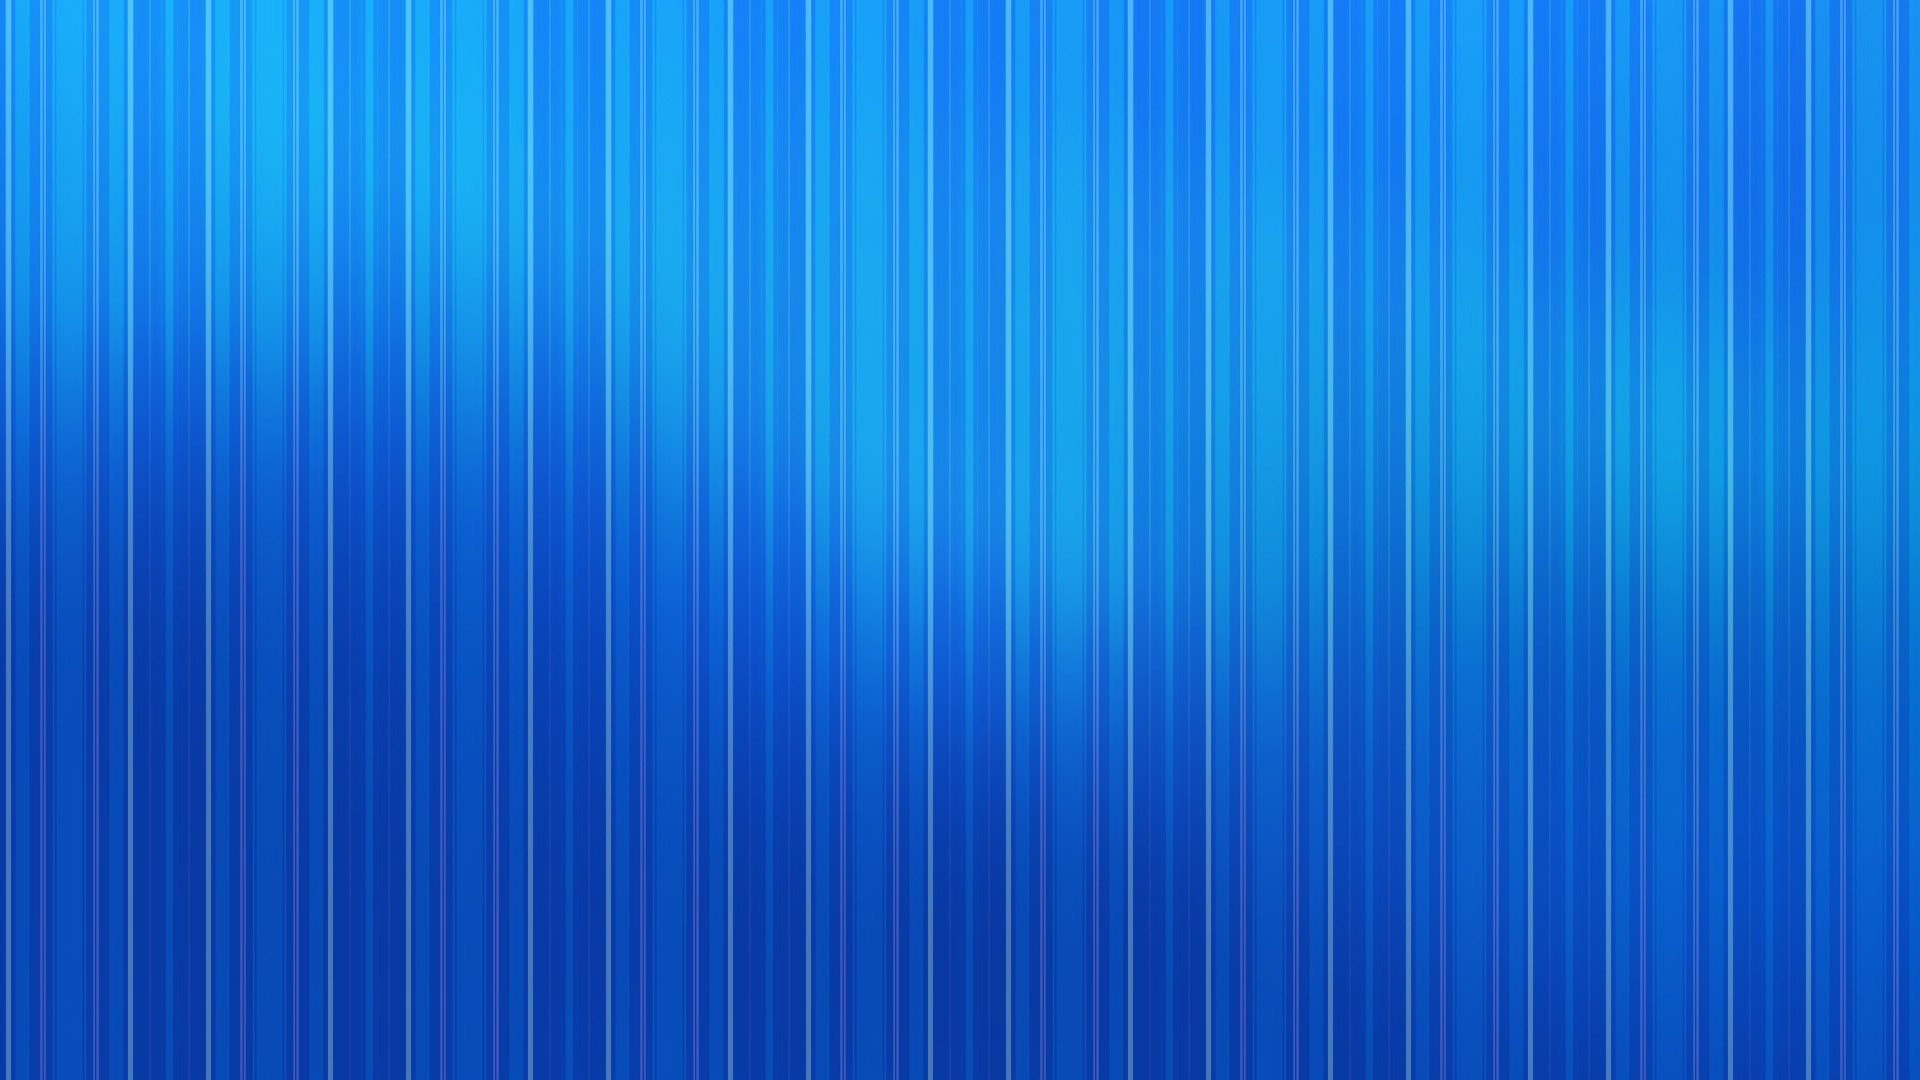 1920x1080 Free Blue Stripes Wallpaper